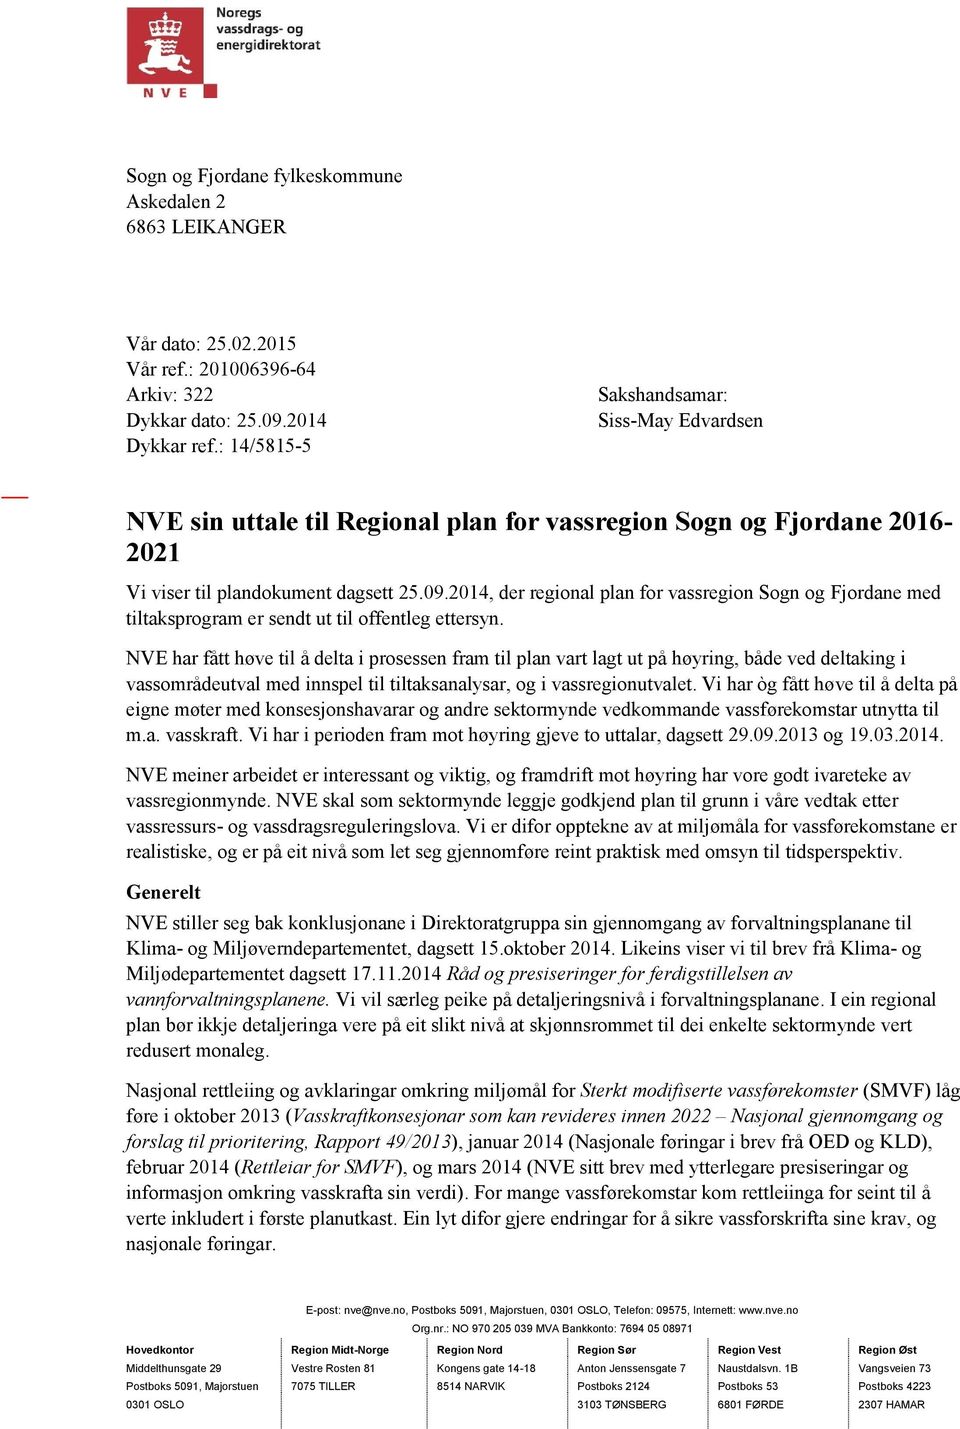 2014, der regional plan for vassregion Sogn og Fjordane med tiltaksprogram er sendt ut til offentleg ettersyn.